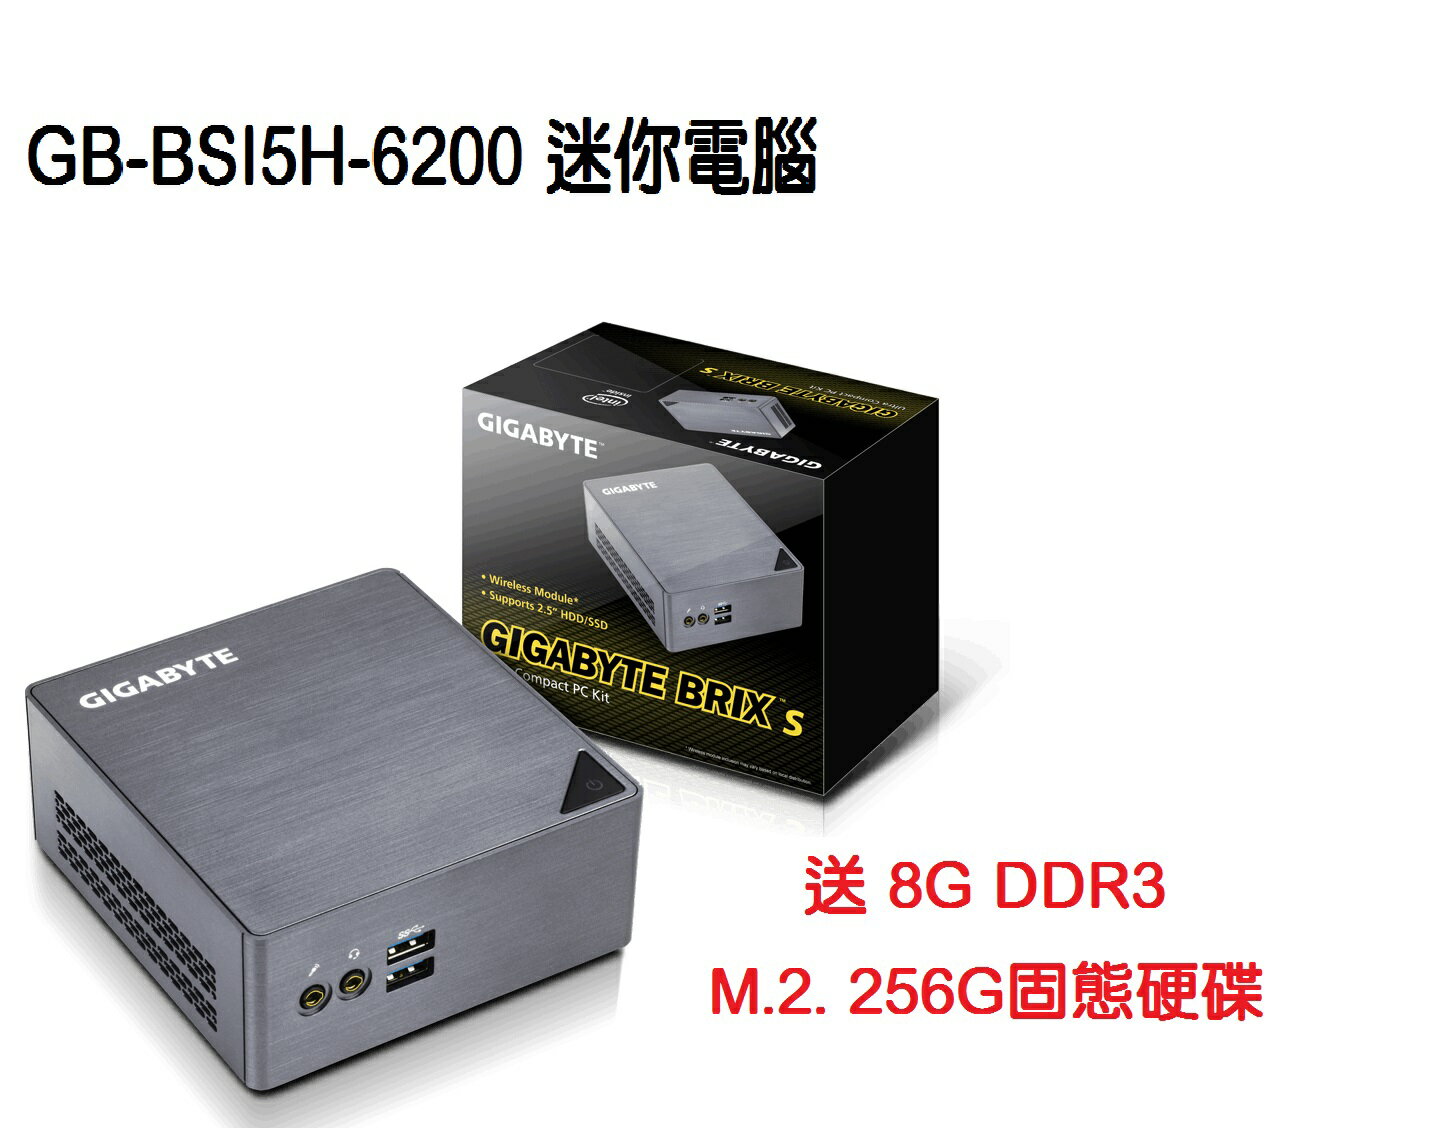 技嘉GB-BSI5H-6200 迷你電腦  